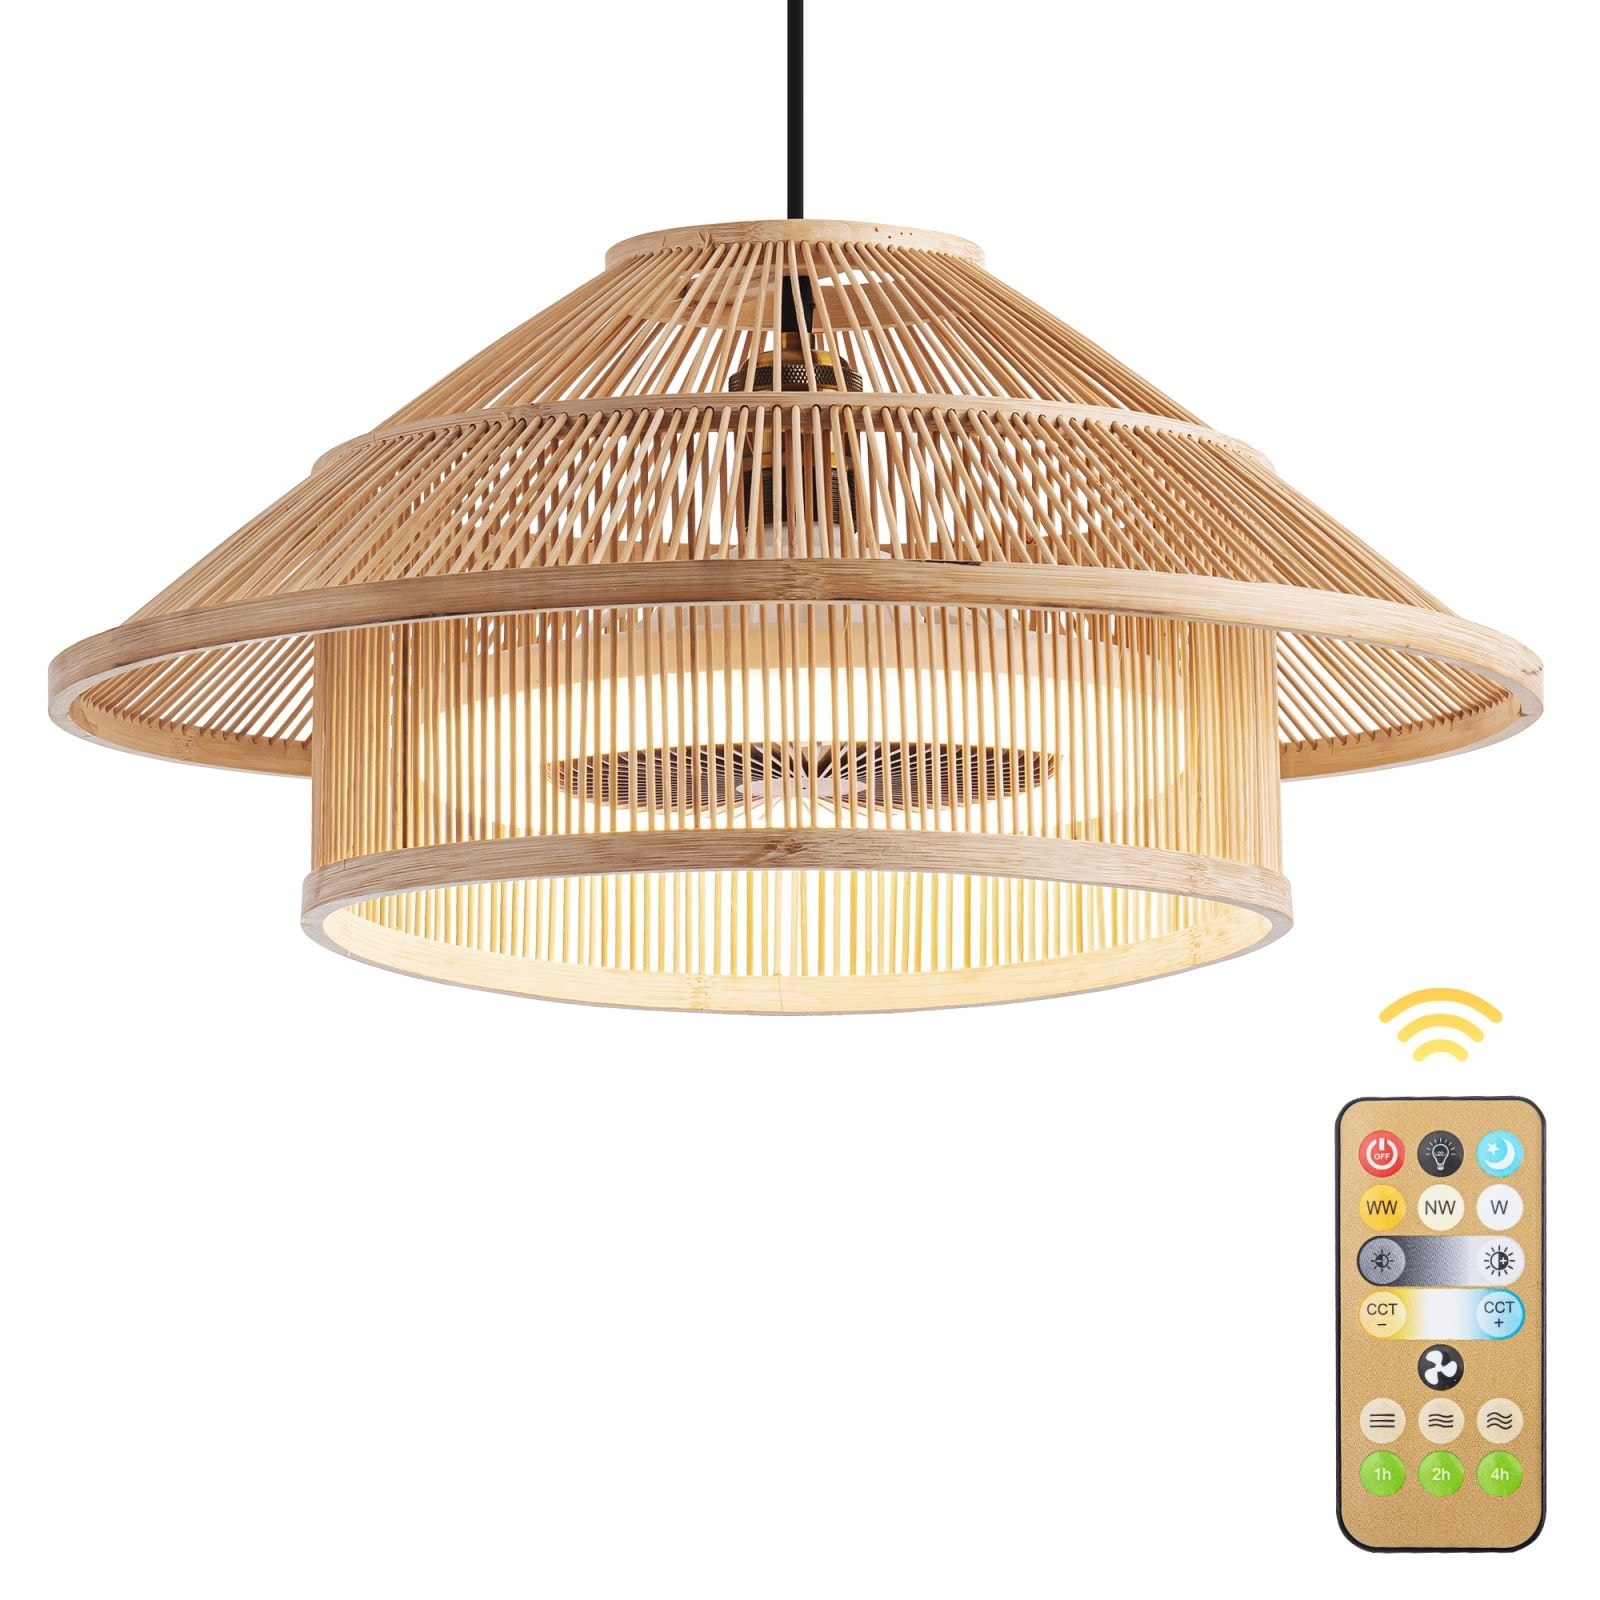 Bamboo ceiling fan lights 3-Speed Fandelier With Remote - 19.7w